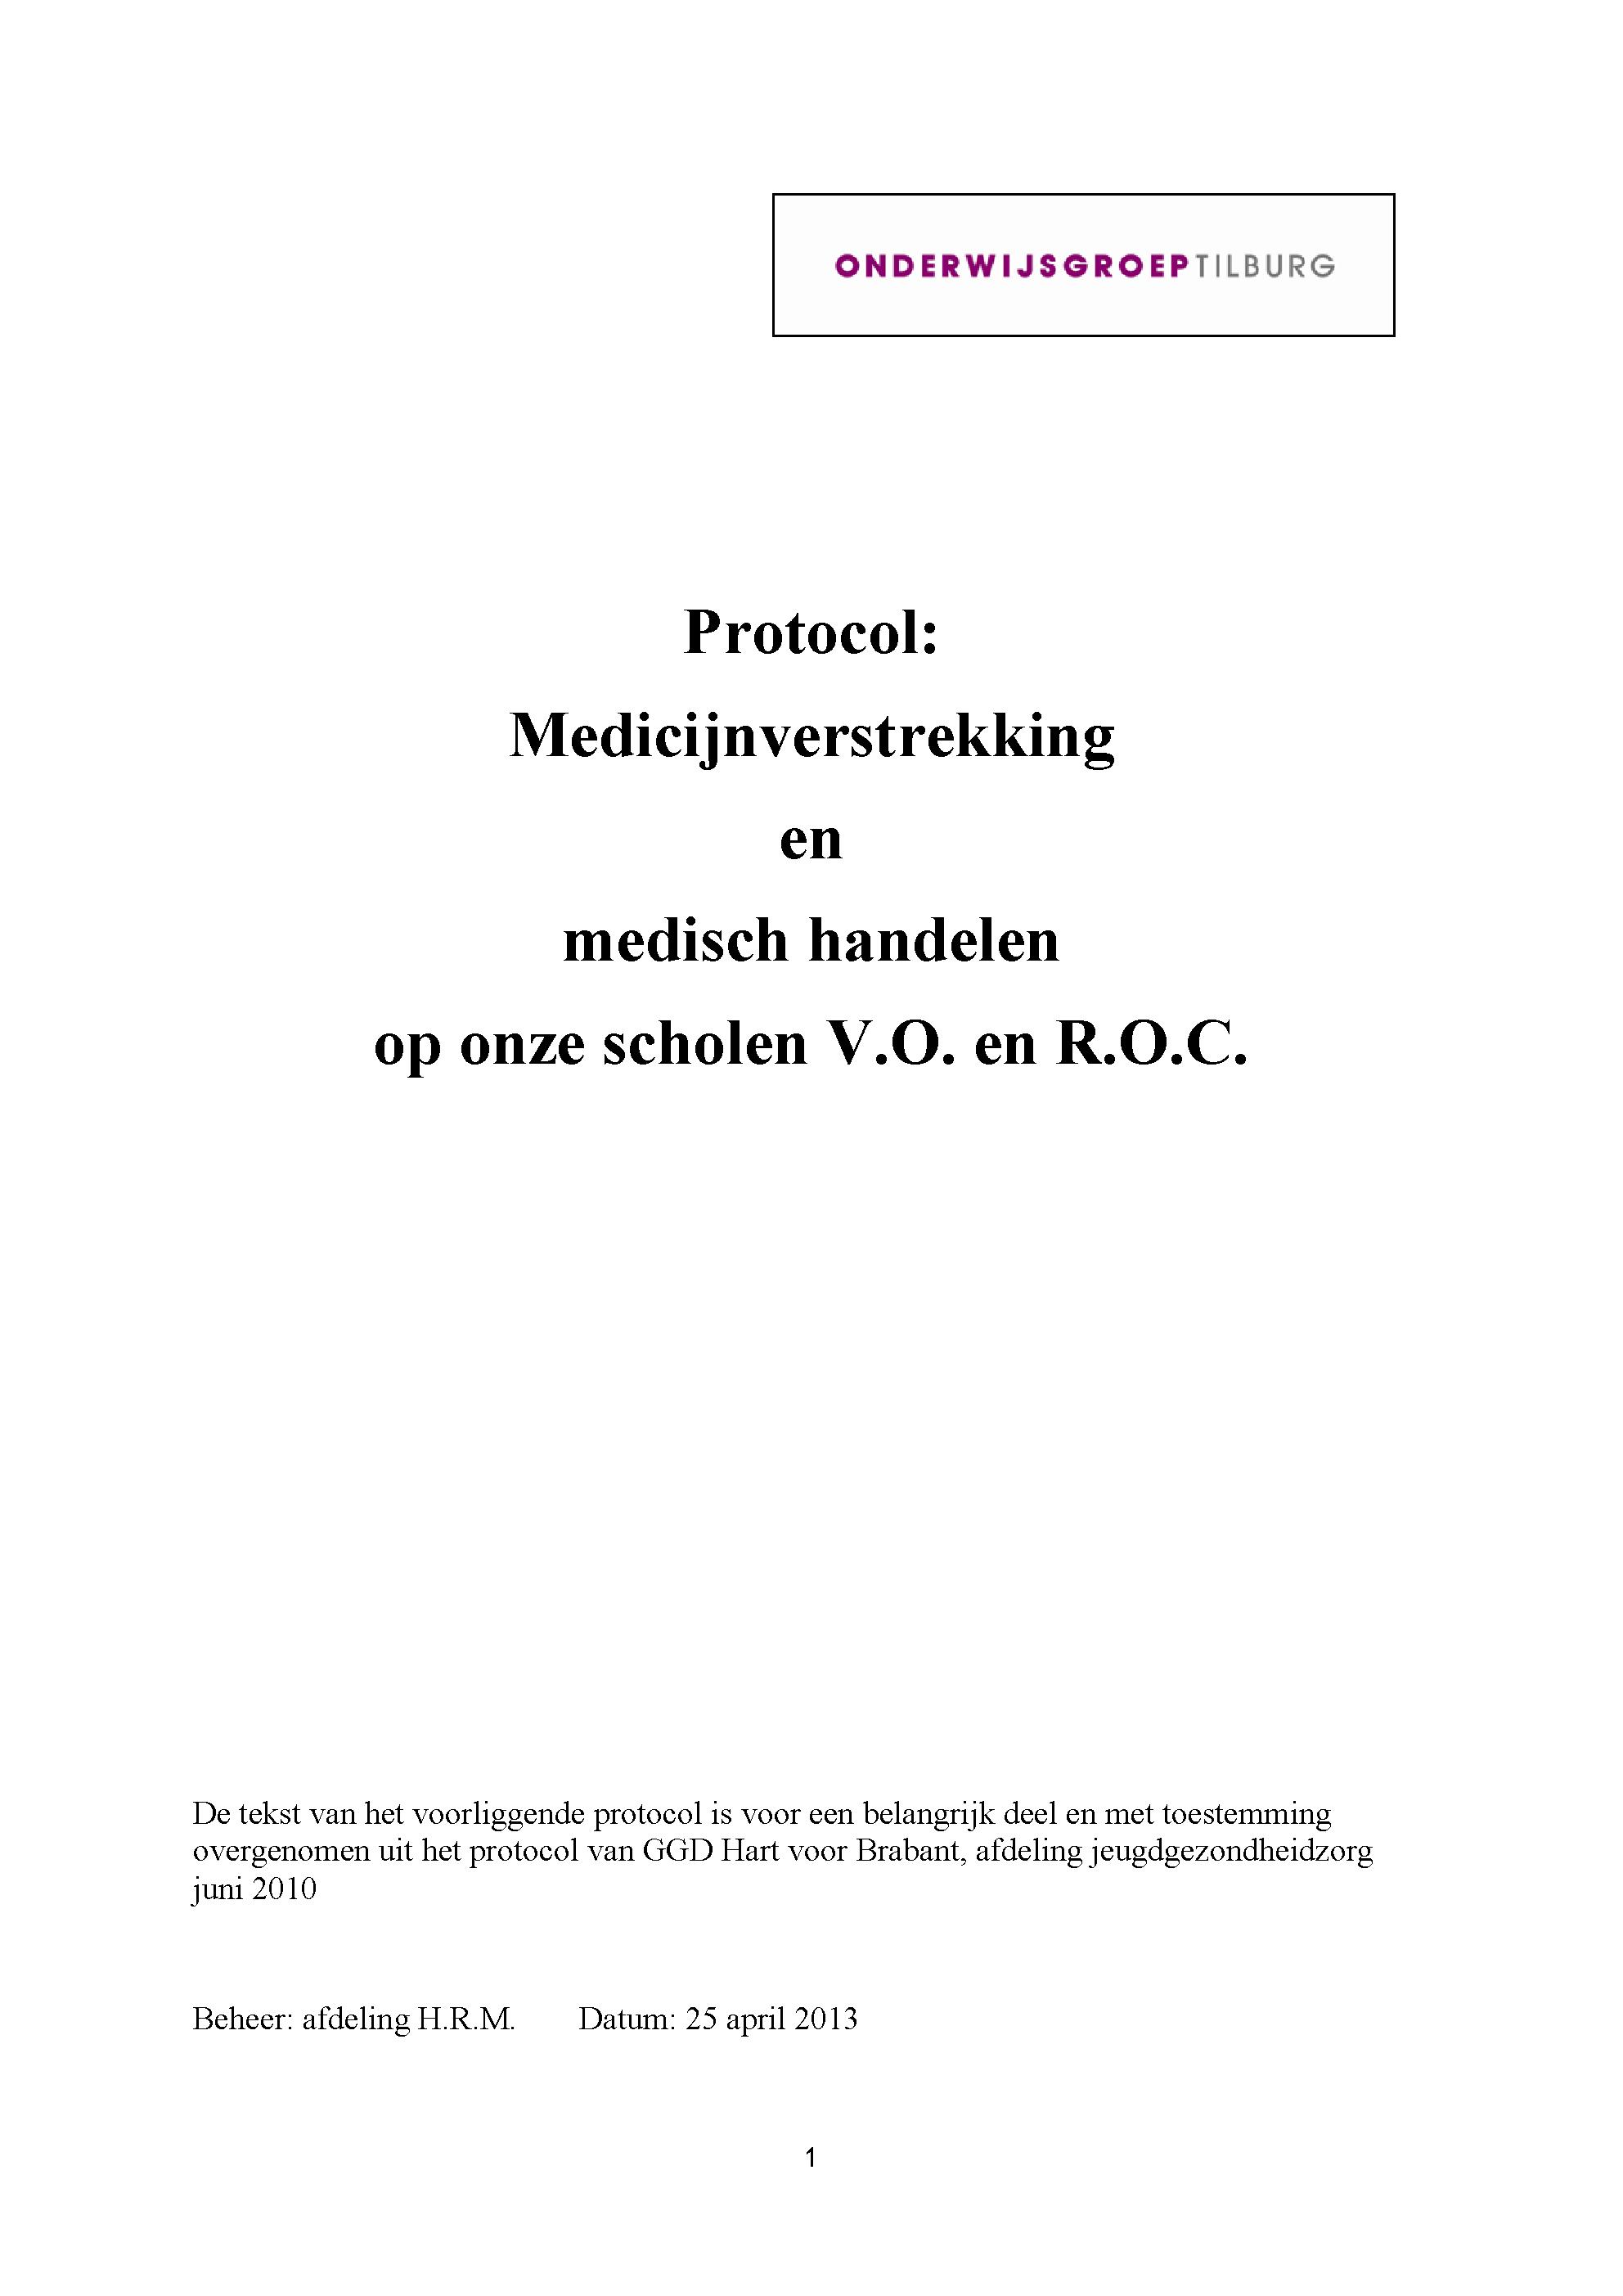 Protocol medicijnverstrekking en medisch handelen Onderwijsgroep Tilburg